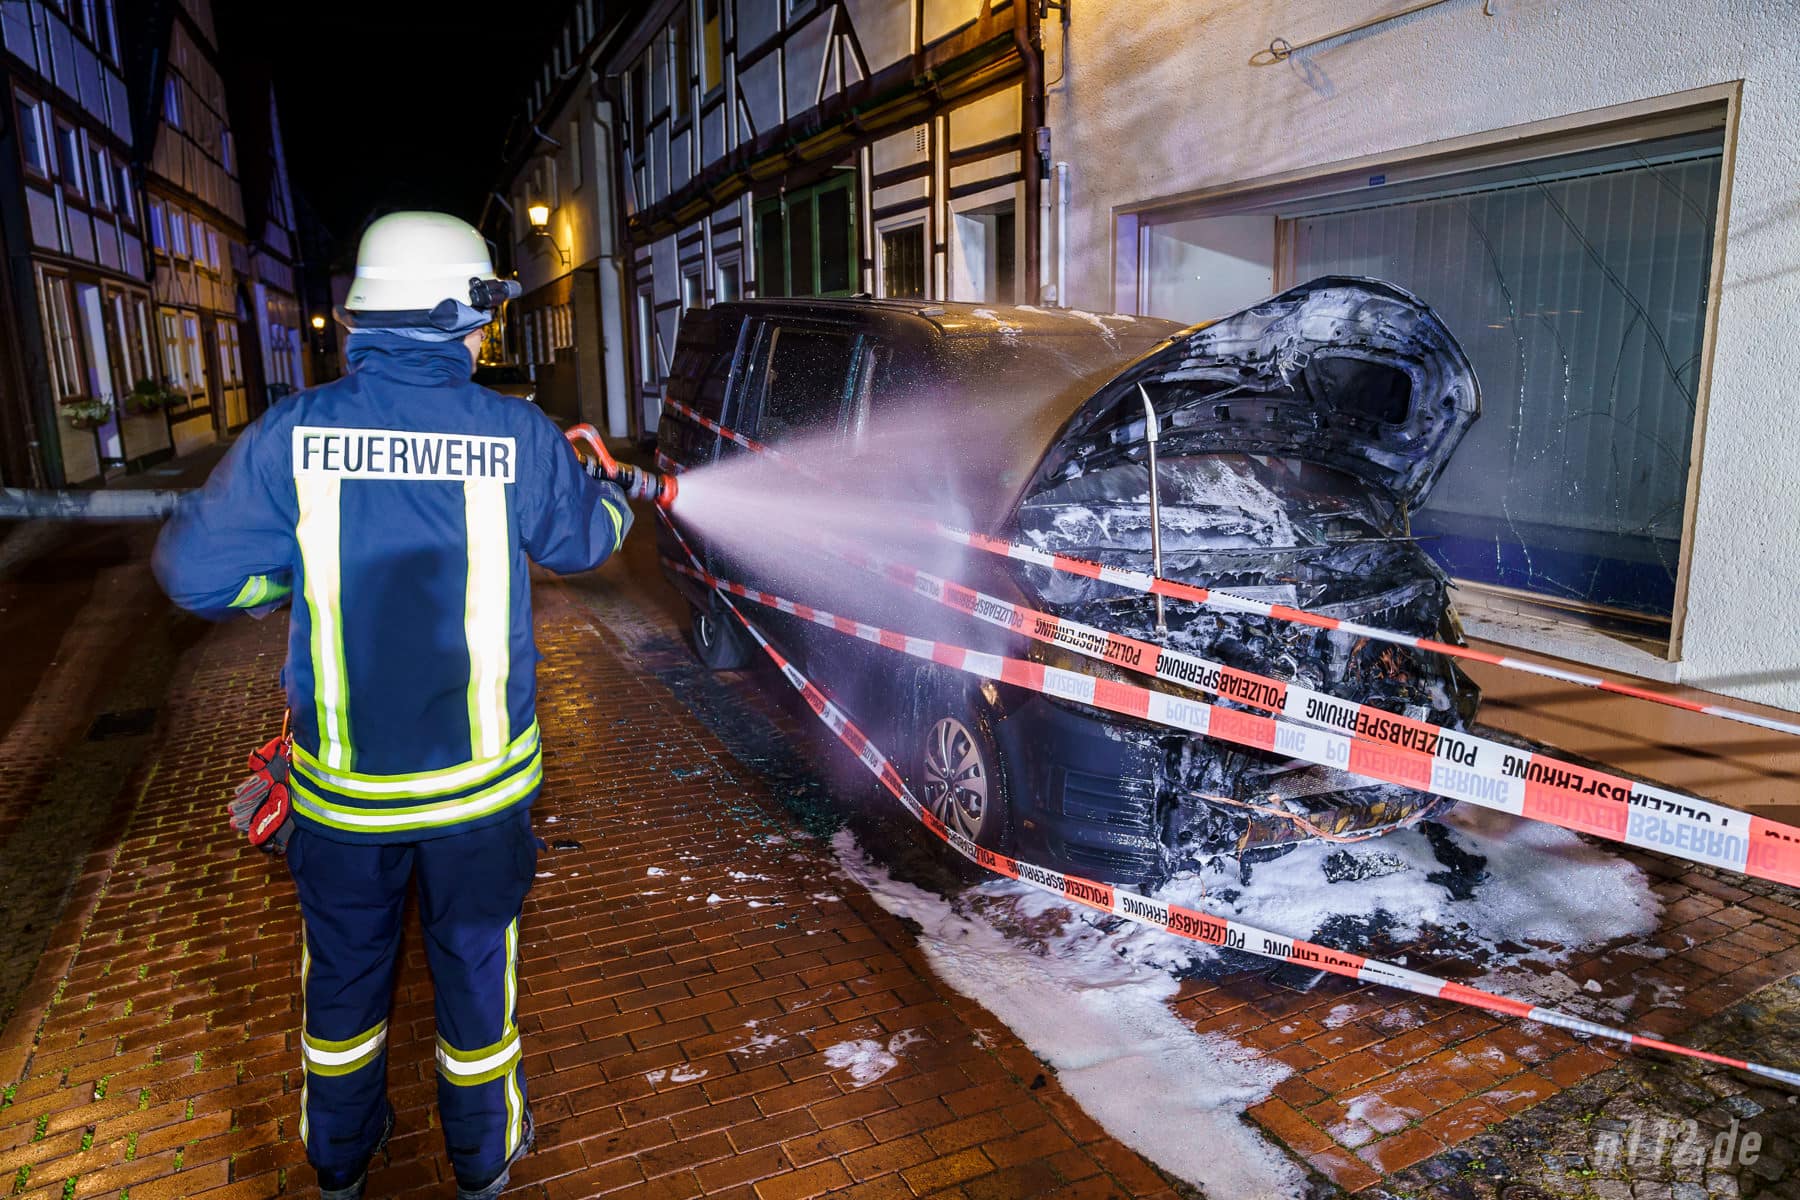 Letzte Glutnester werden mit Wasser gelöscht, nachdem die Polizei das Fahrzeug schon großzügig mit Absperrband eingewickelt hat (Foto: n112.de/Stefan Hillen)